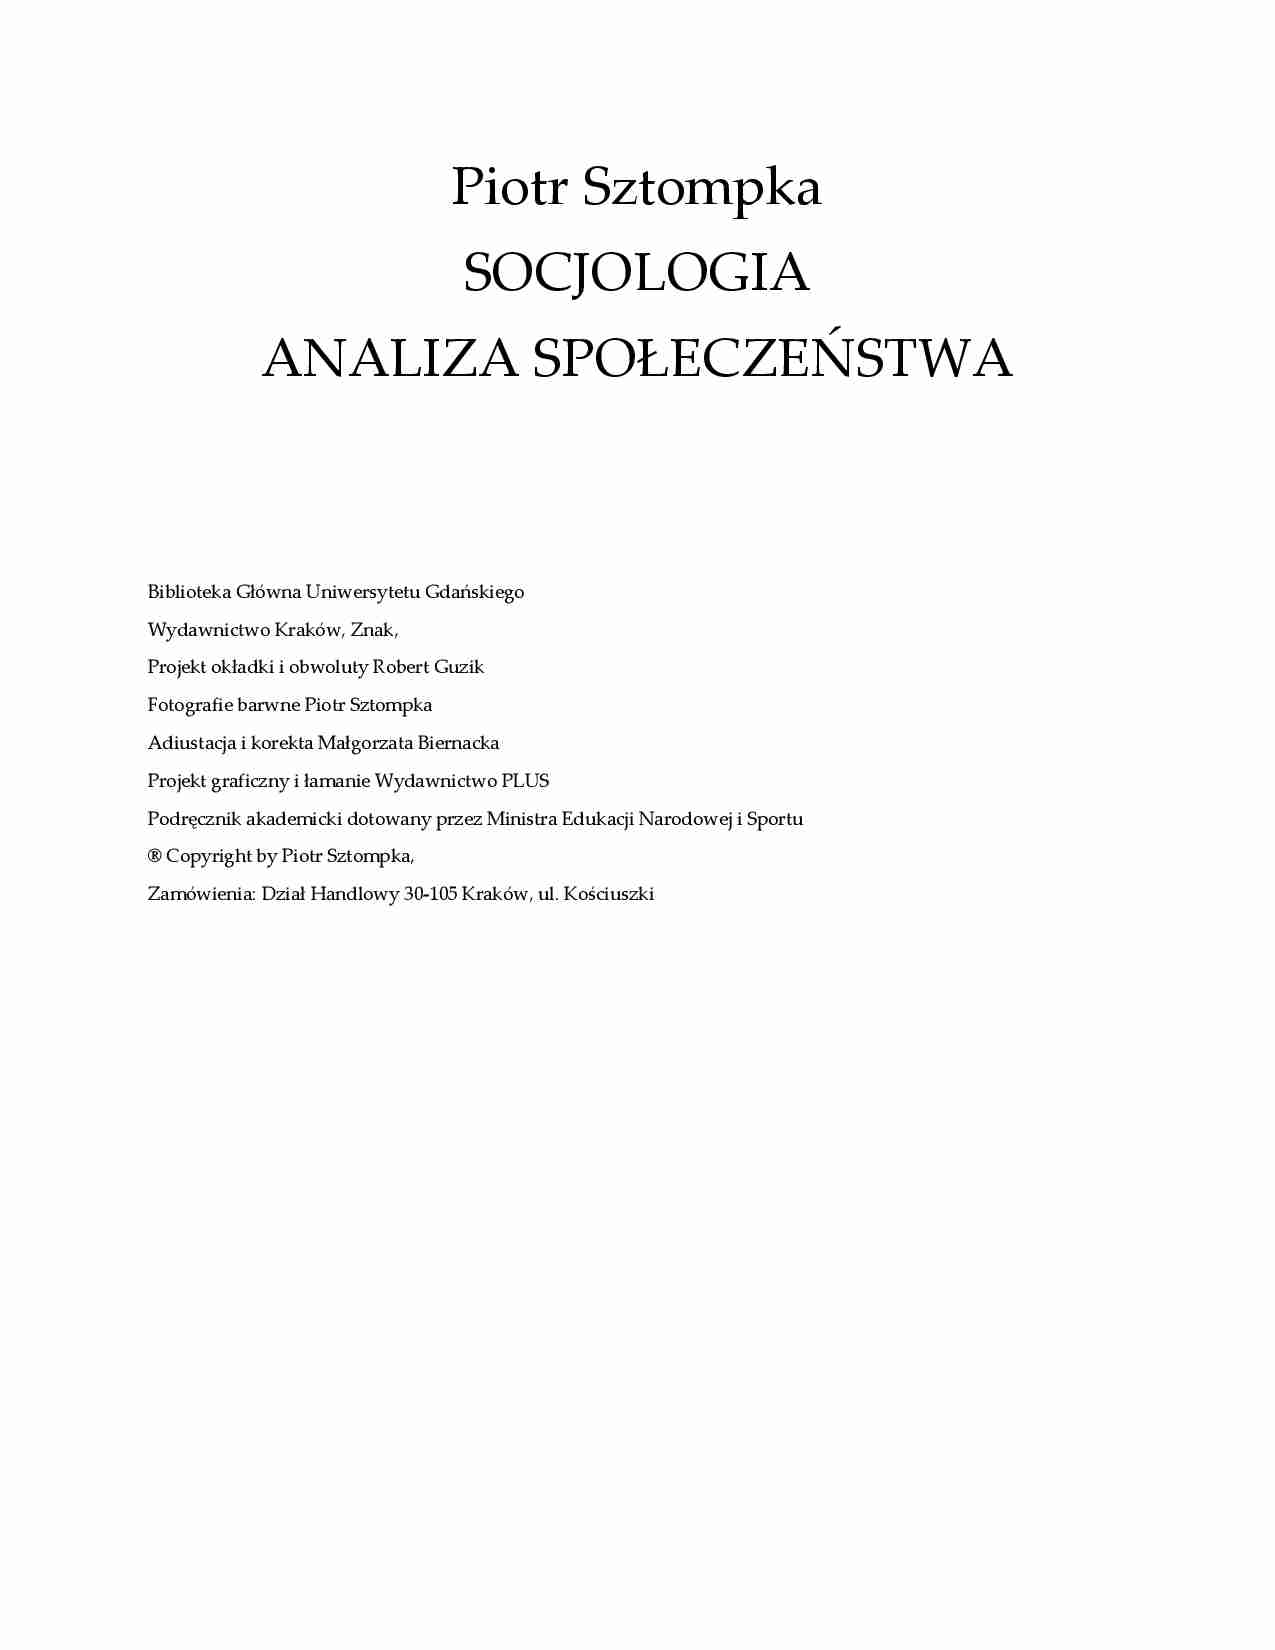  SOCJOLOGIA ANALIZA SPOŁECZEŃSTWA Piotr Sztompka - strona 1